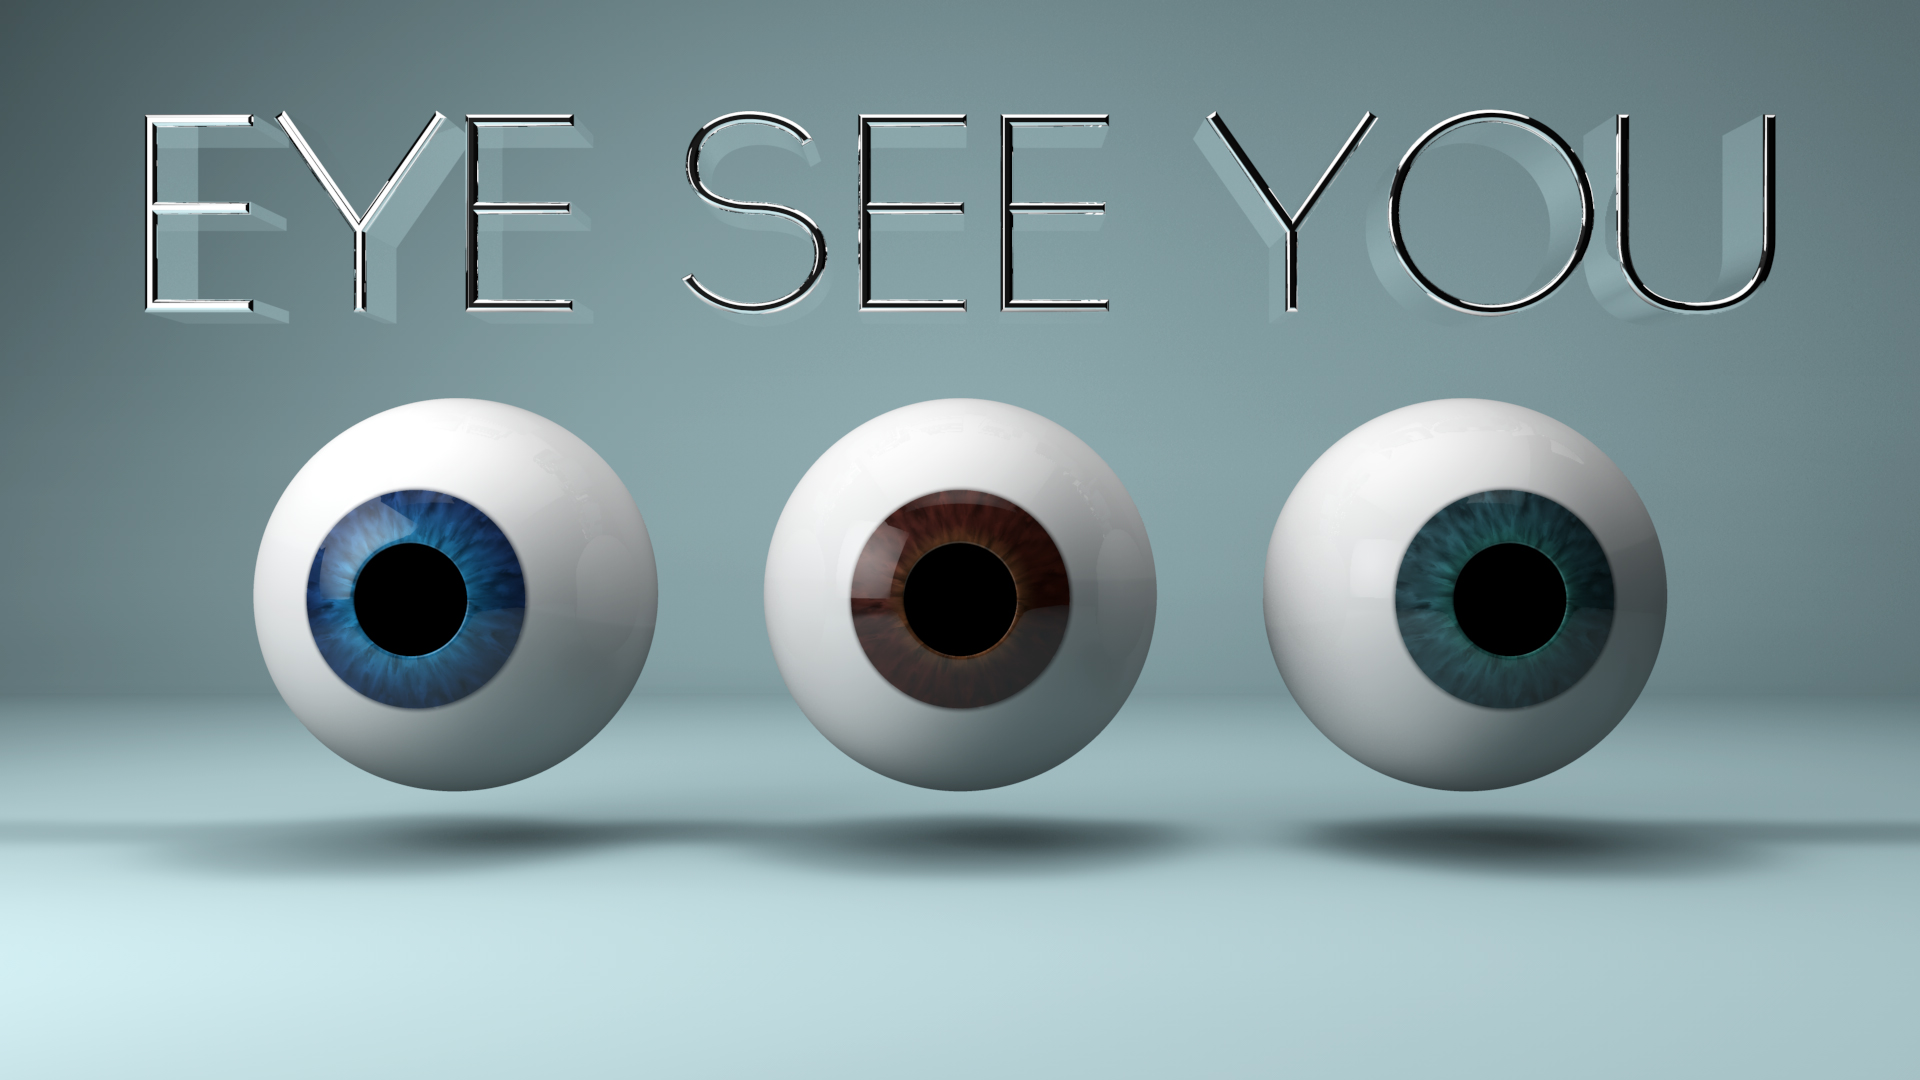 Eye See You by Veritas-in-omnes on DeviantArt